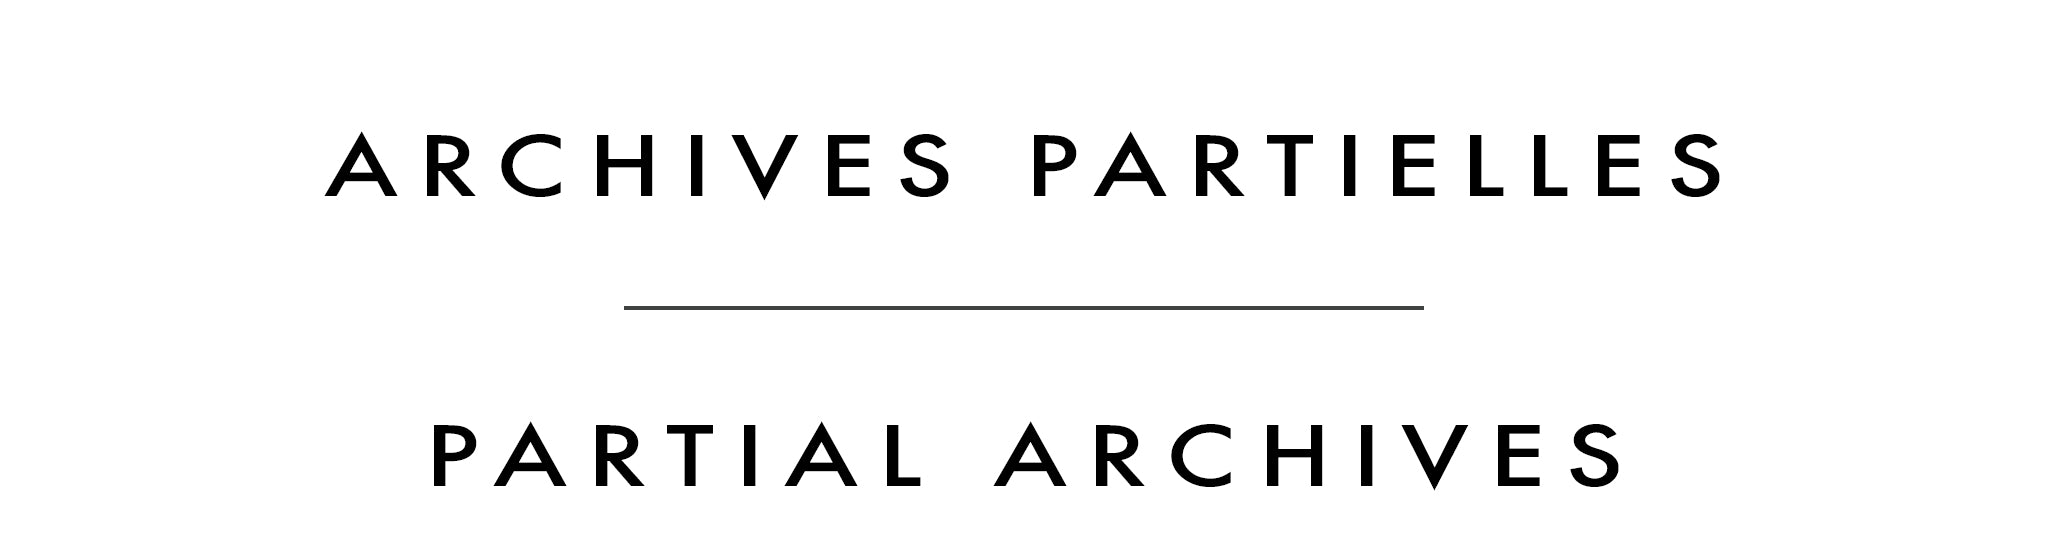 Archives partielles | Partial Archives | Jennifer Sparacino